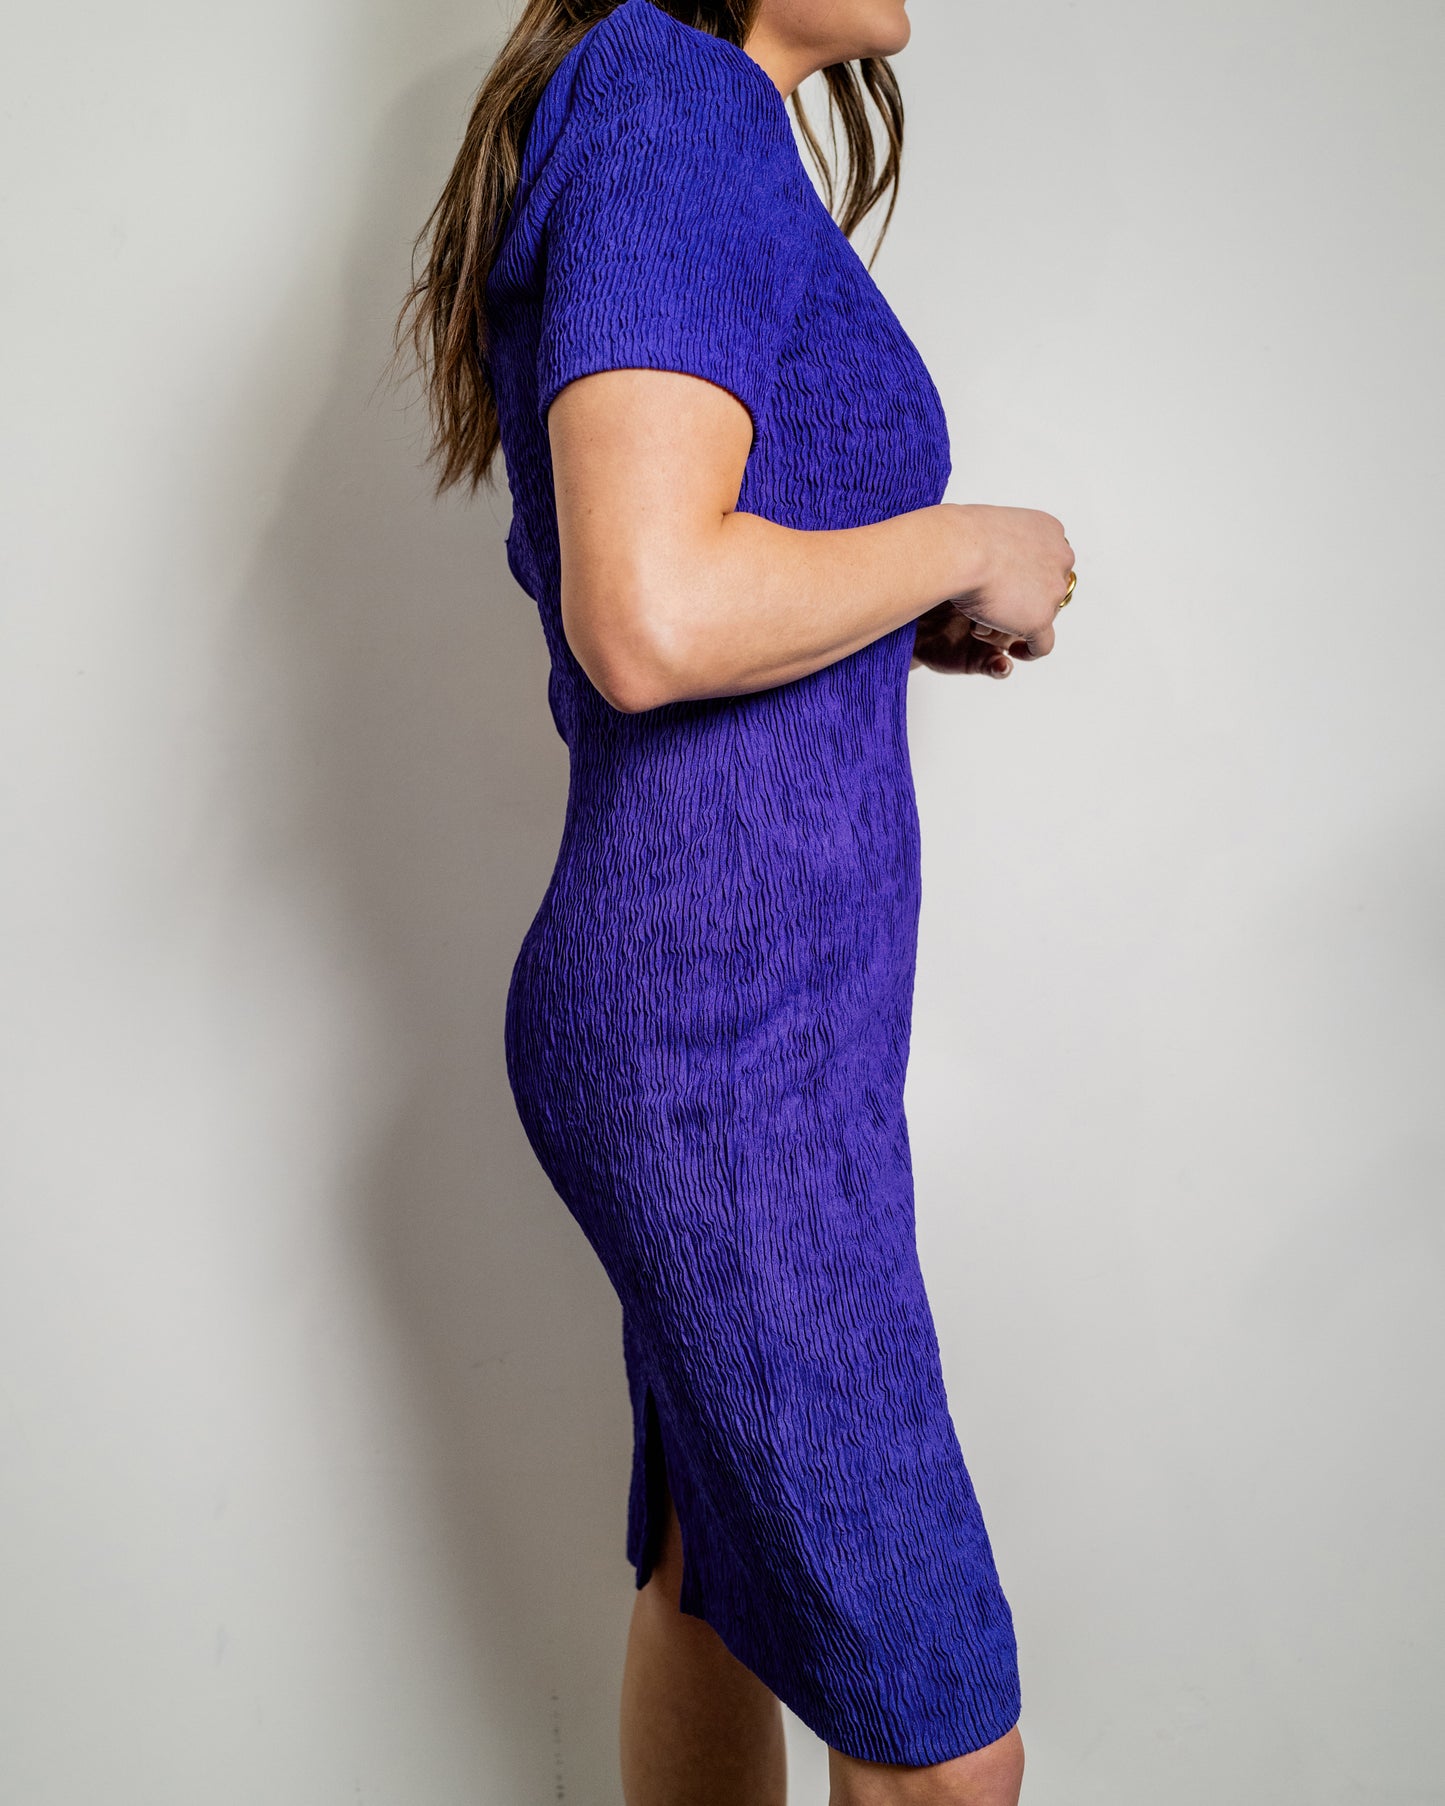 Vintage Texture Purple Dress - Size 10